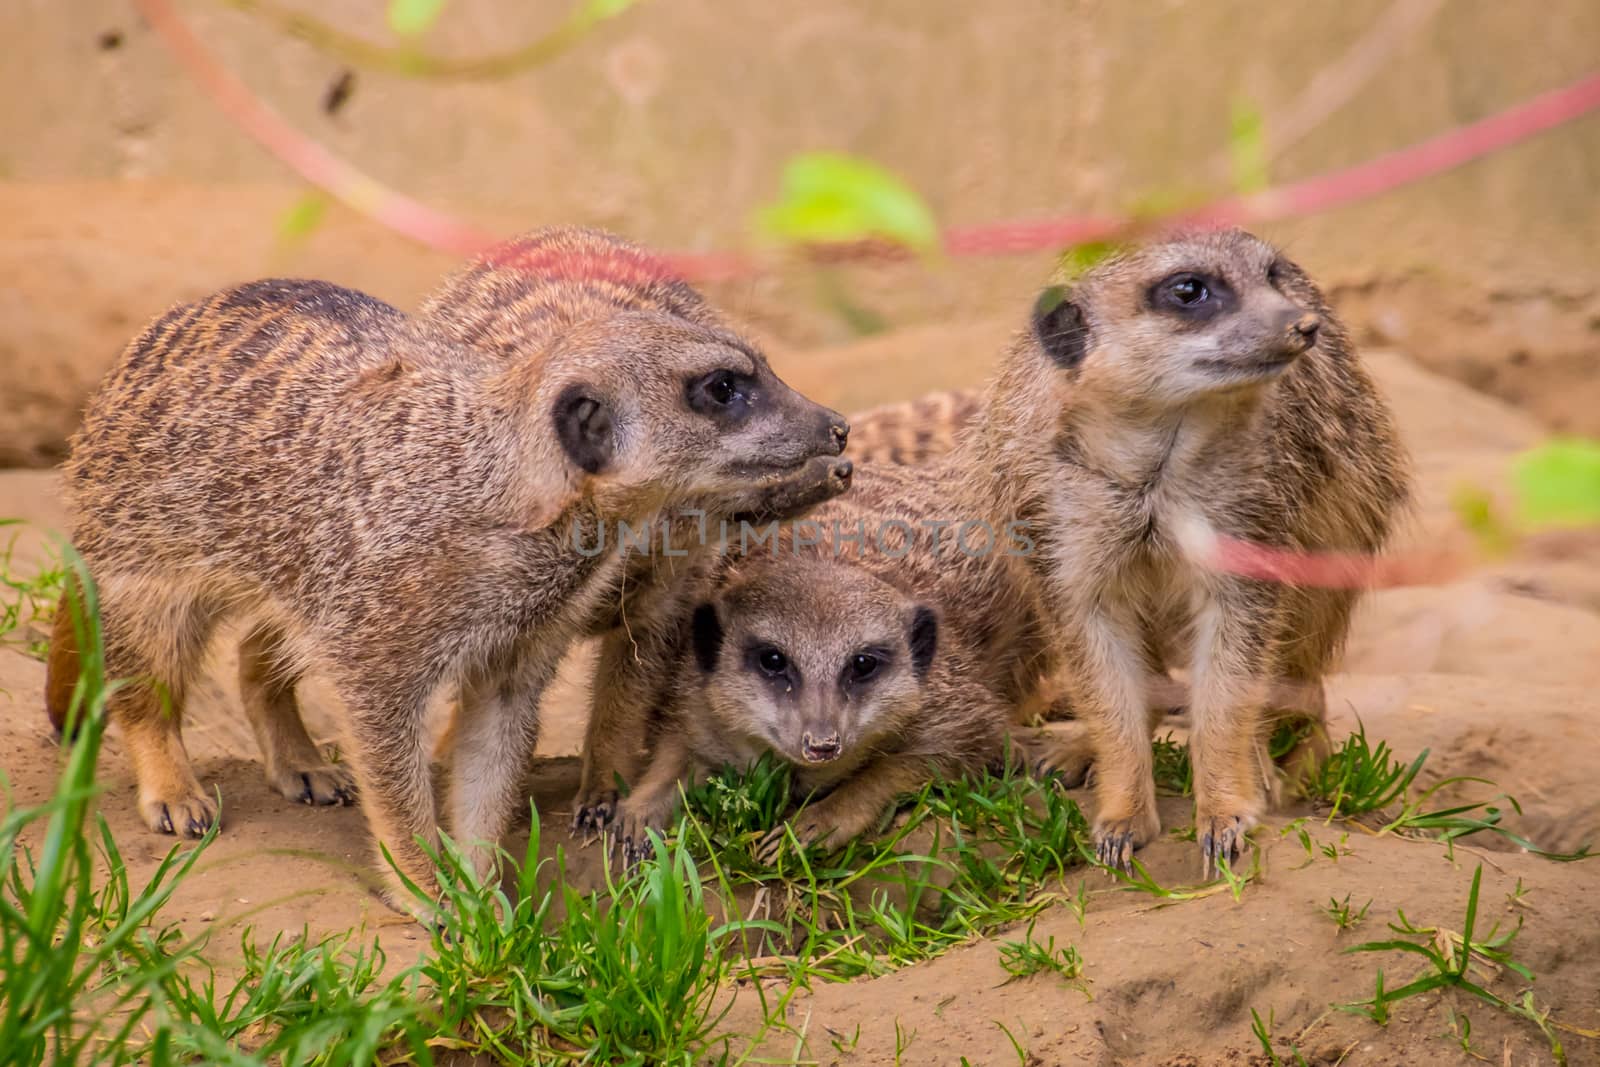 Three meerkats or suricats family on sand